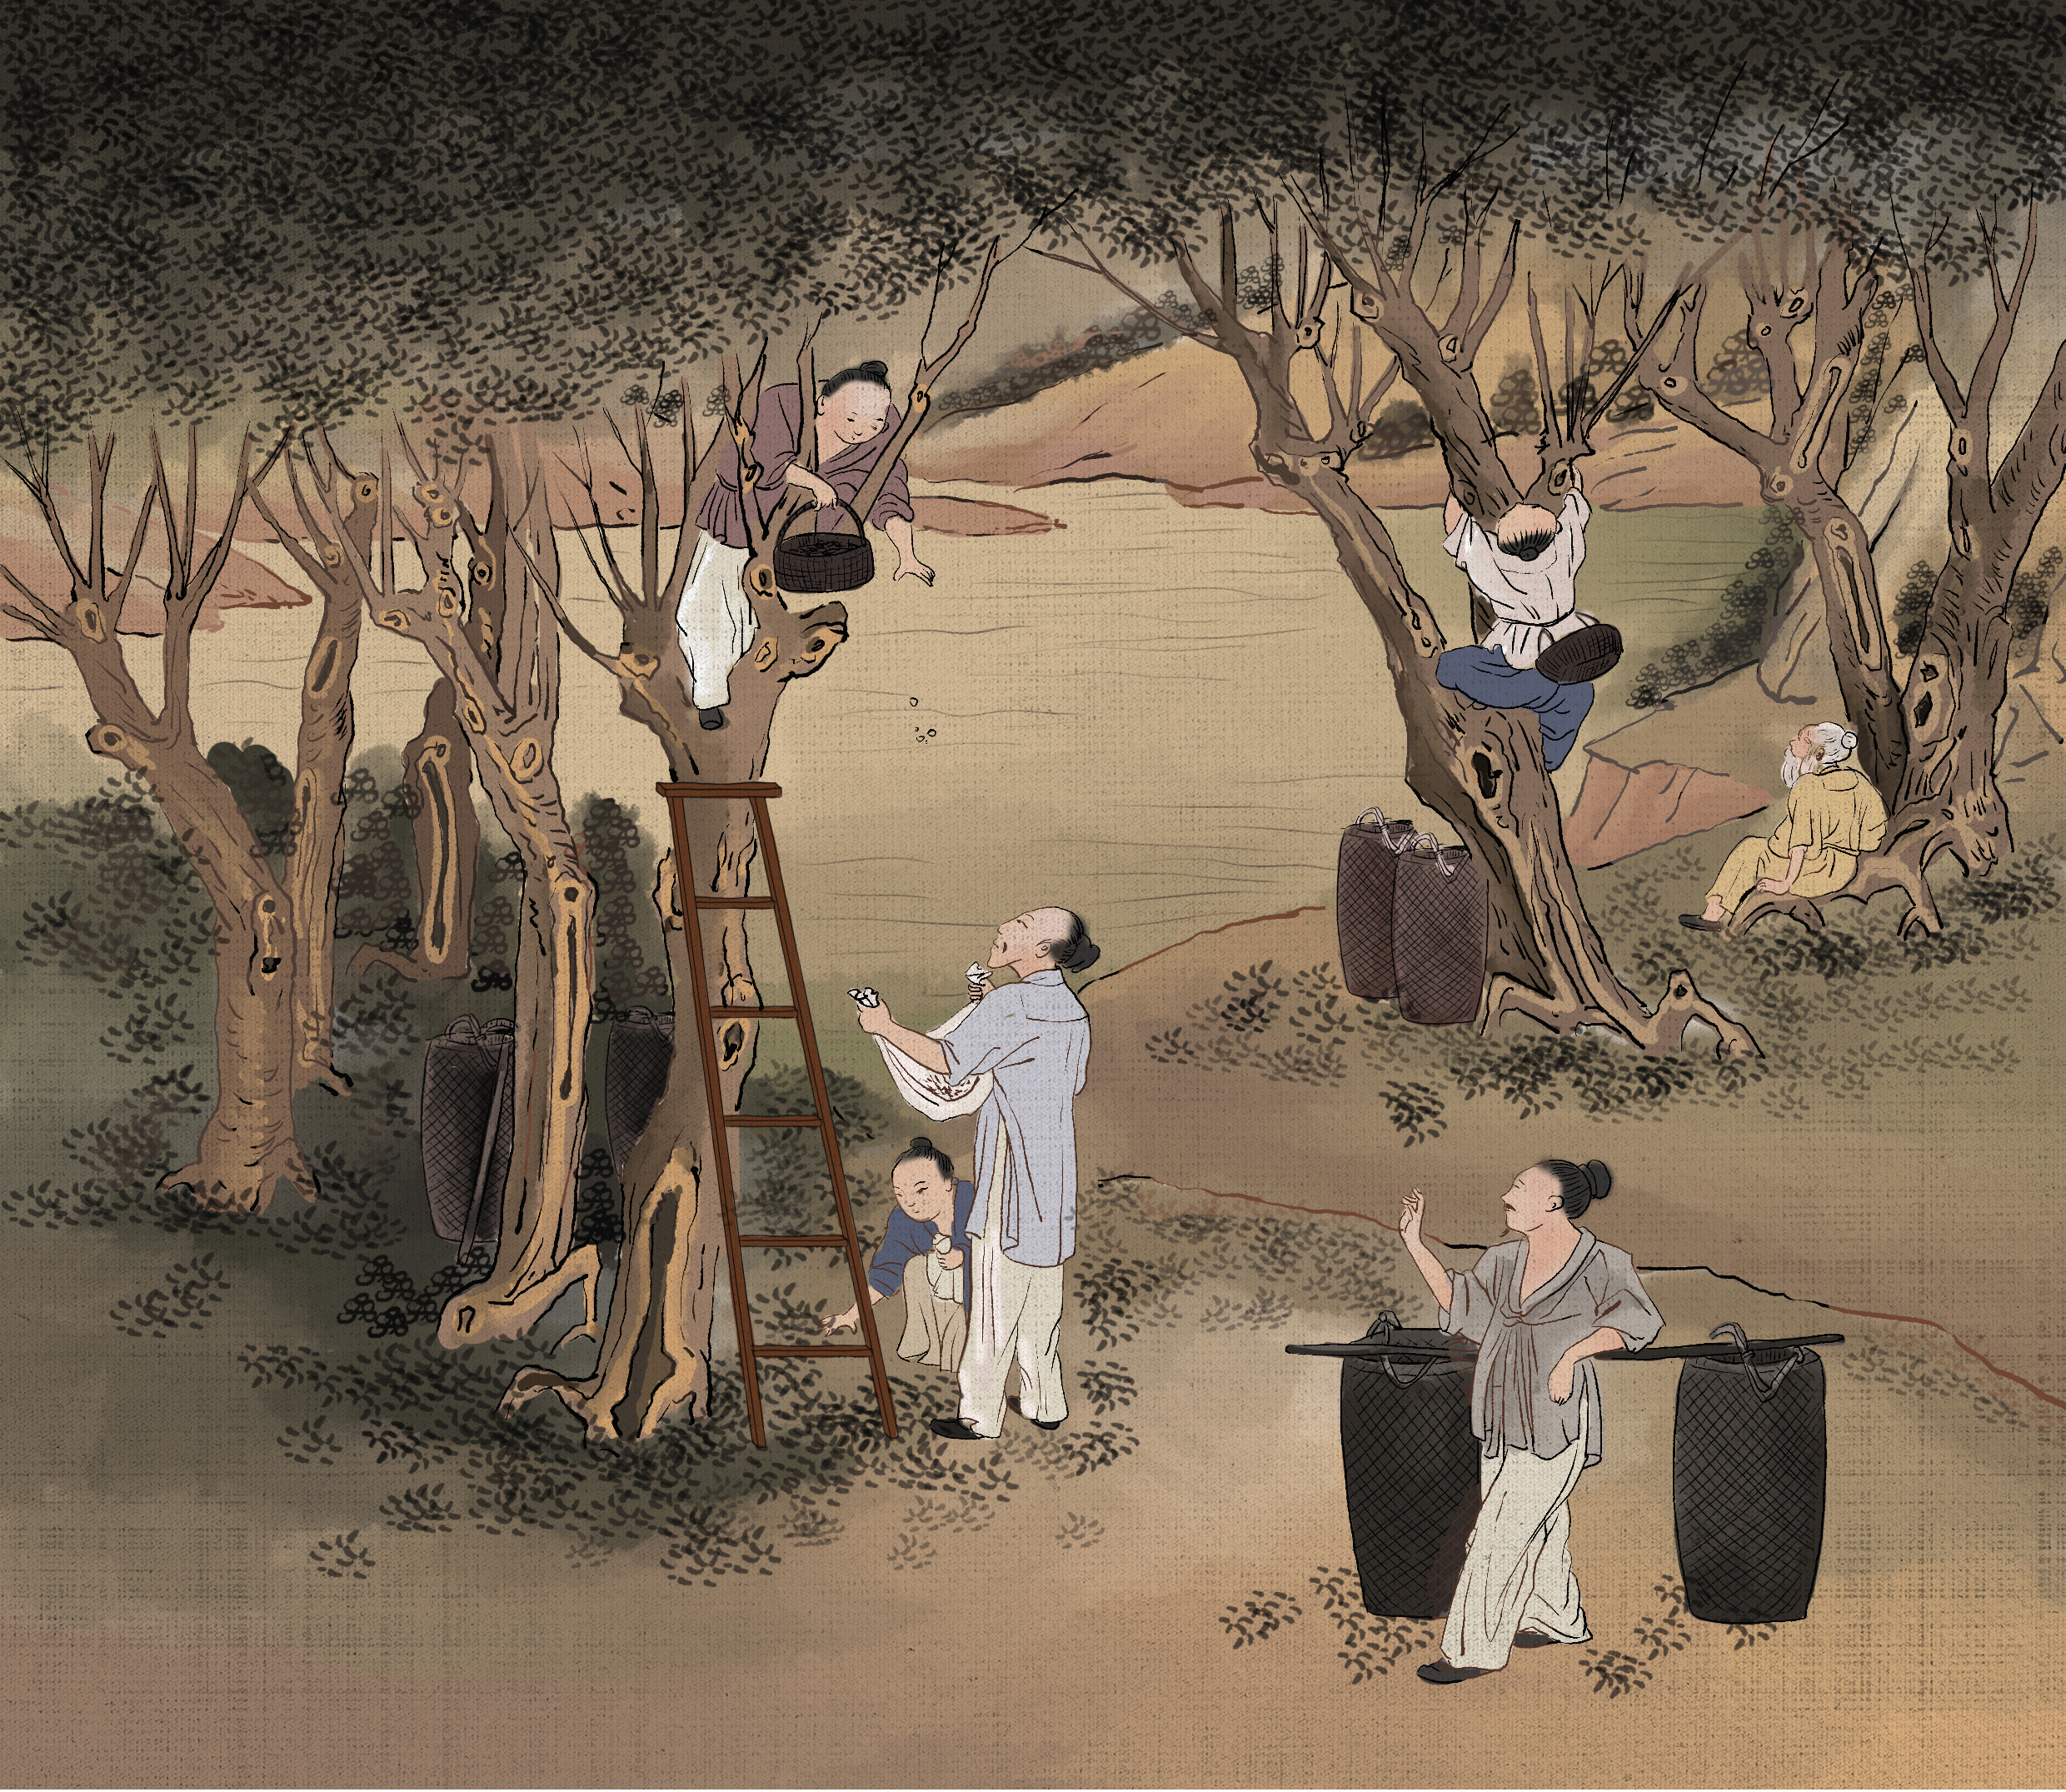 本套插画由ps板绘,主题内容为古代农忙时节,农民日常生活